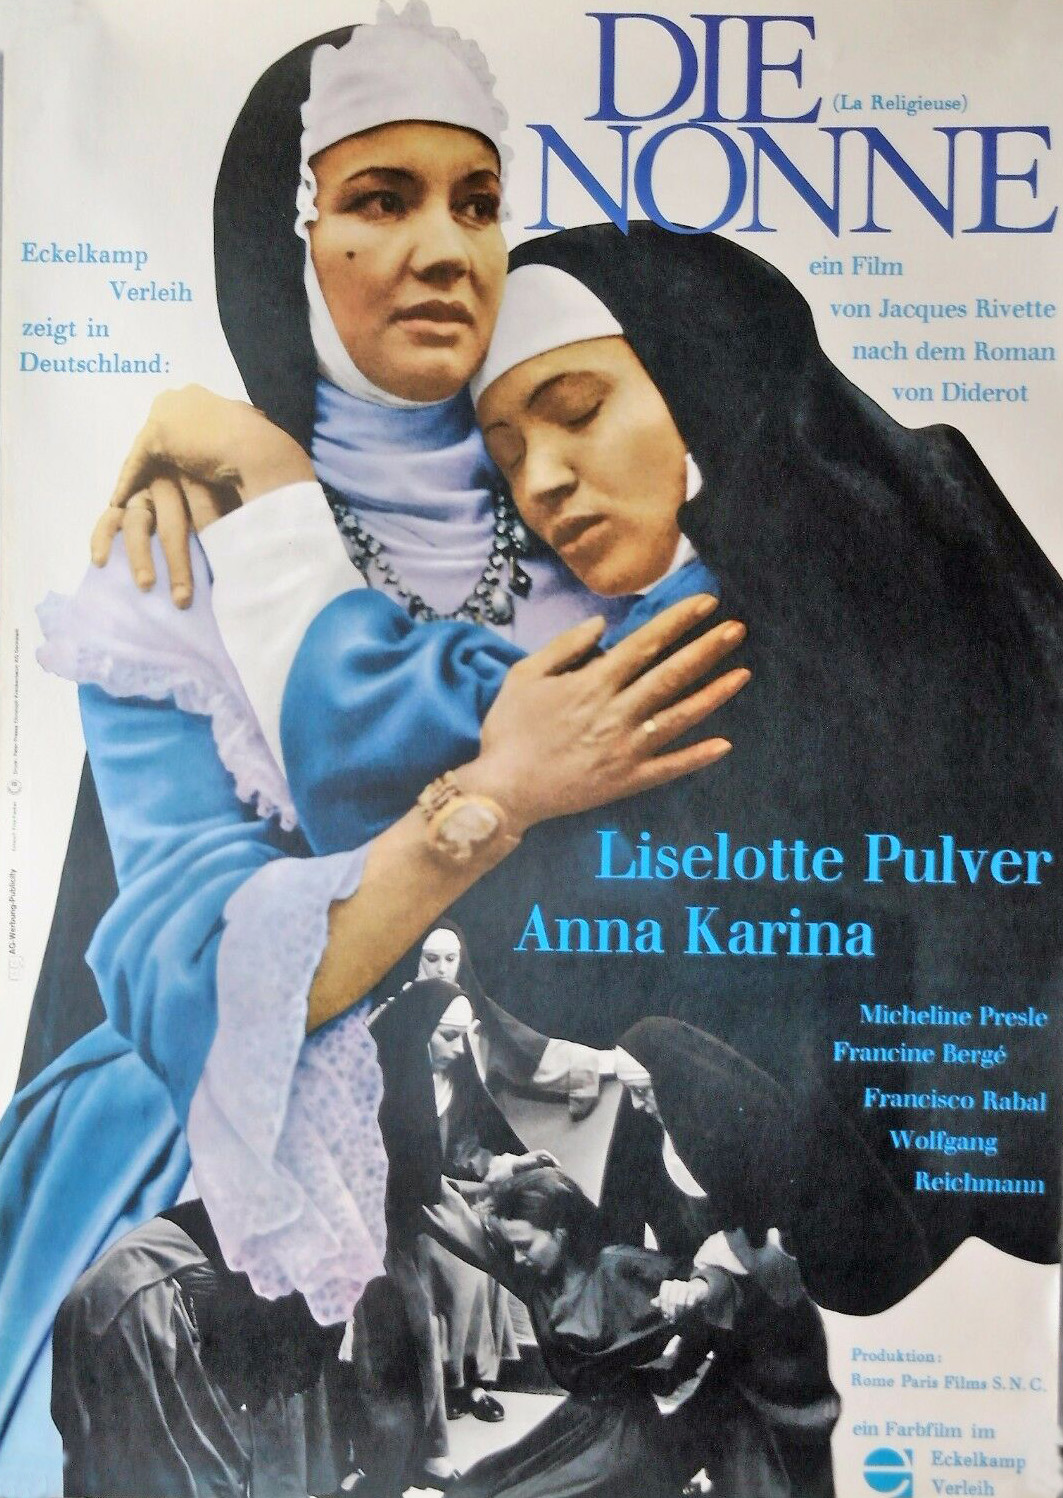 دانلود فیلم The Nun 1966